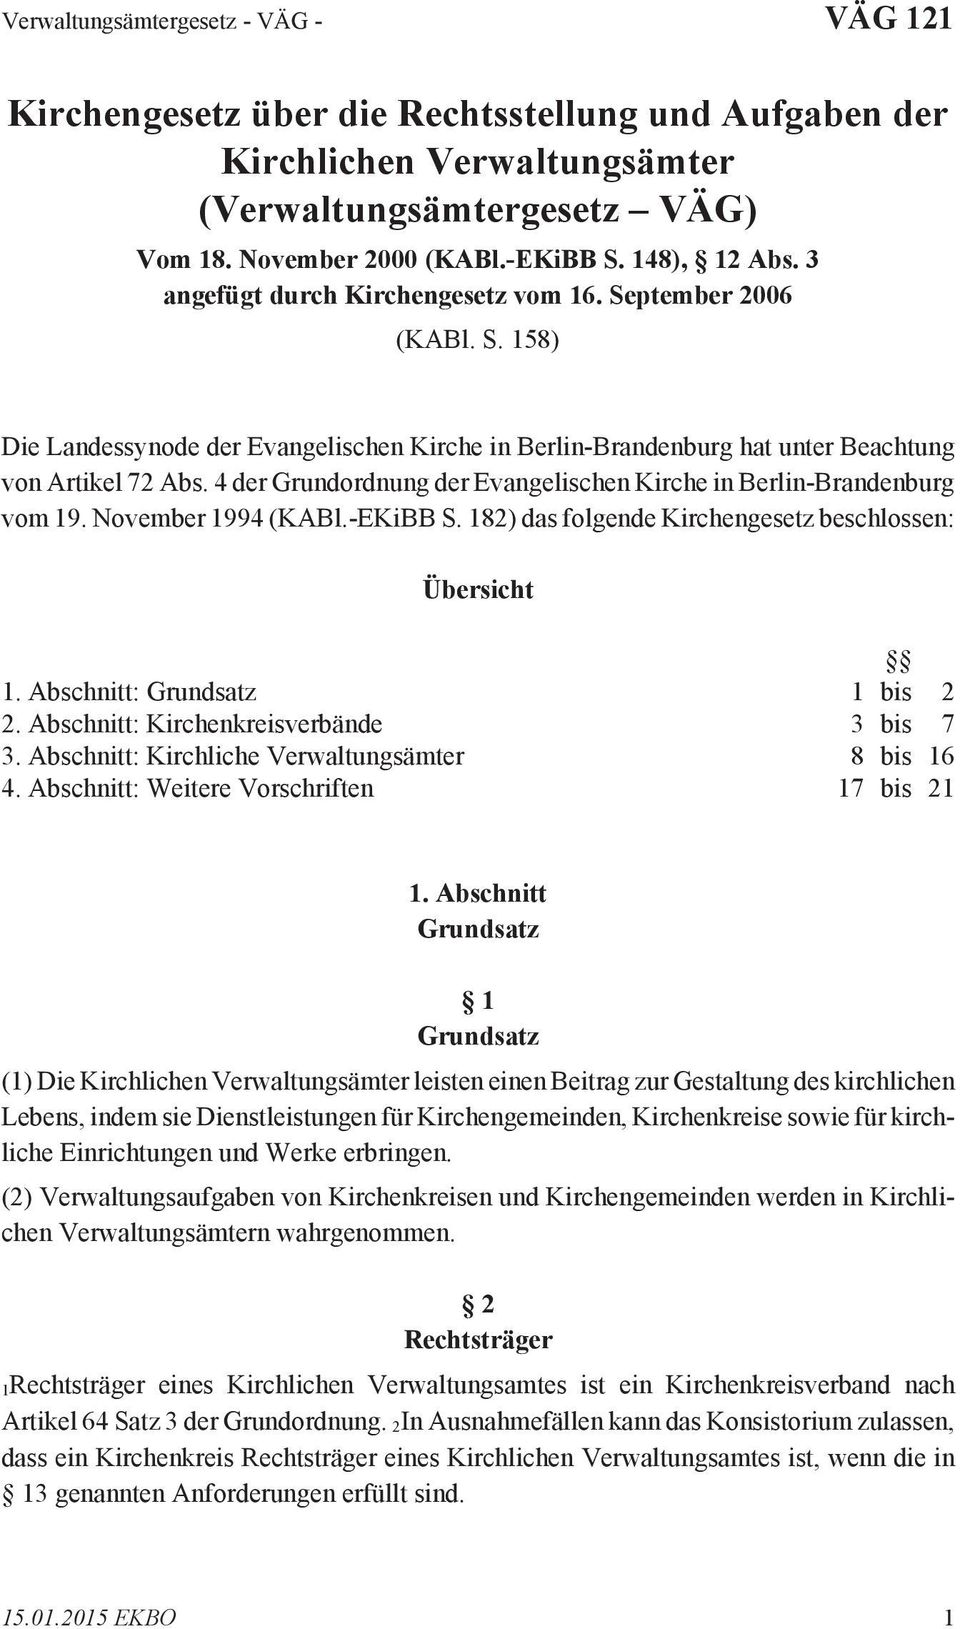 4 der Grundordnung der Evangelischen Kirche in Berlin-Brandenburg vom 19. November 1994 (KABl.-EKiBB S. 182) das folgende Kirchengesetz beschlossen: Übersicht 1. Abschnitt: Grundsatz 1 bis 2 2.